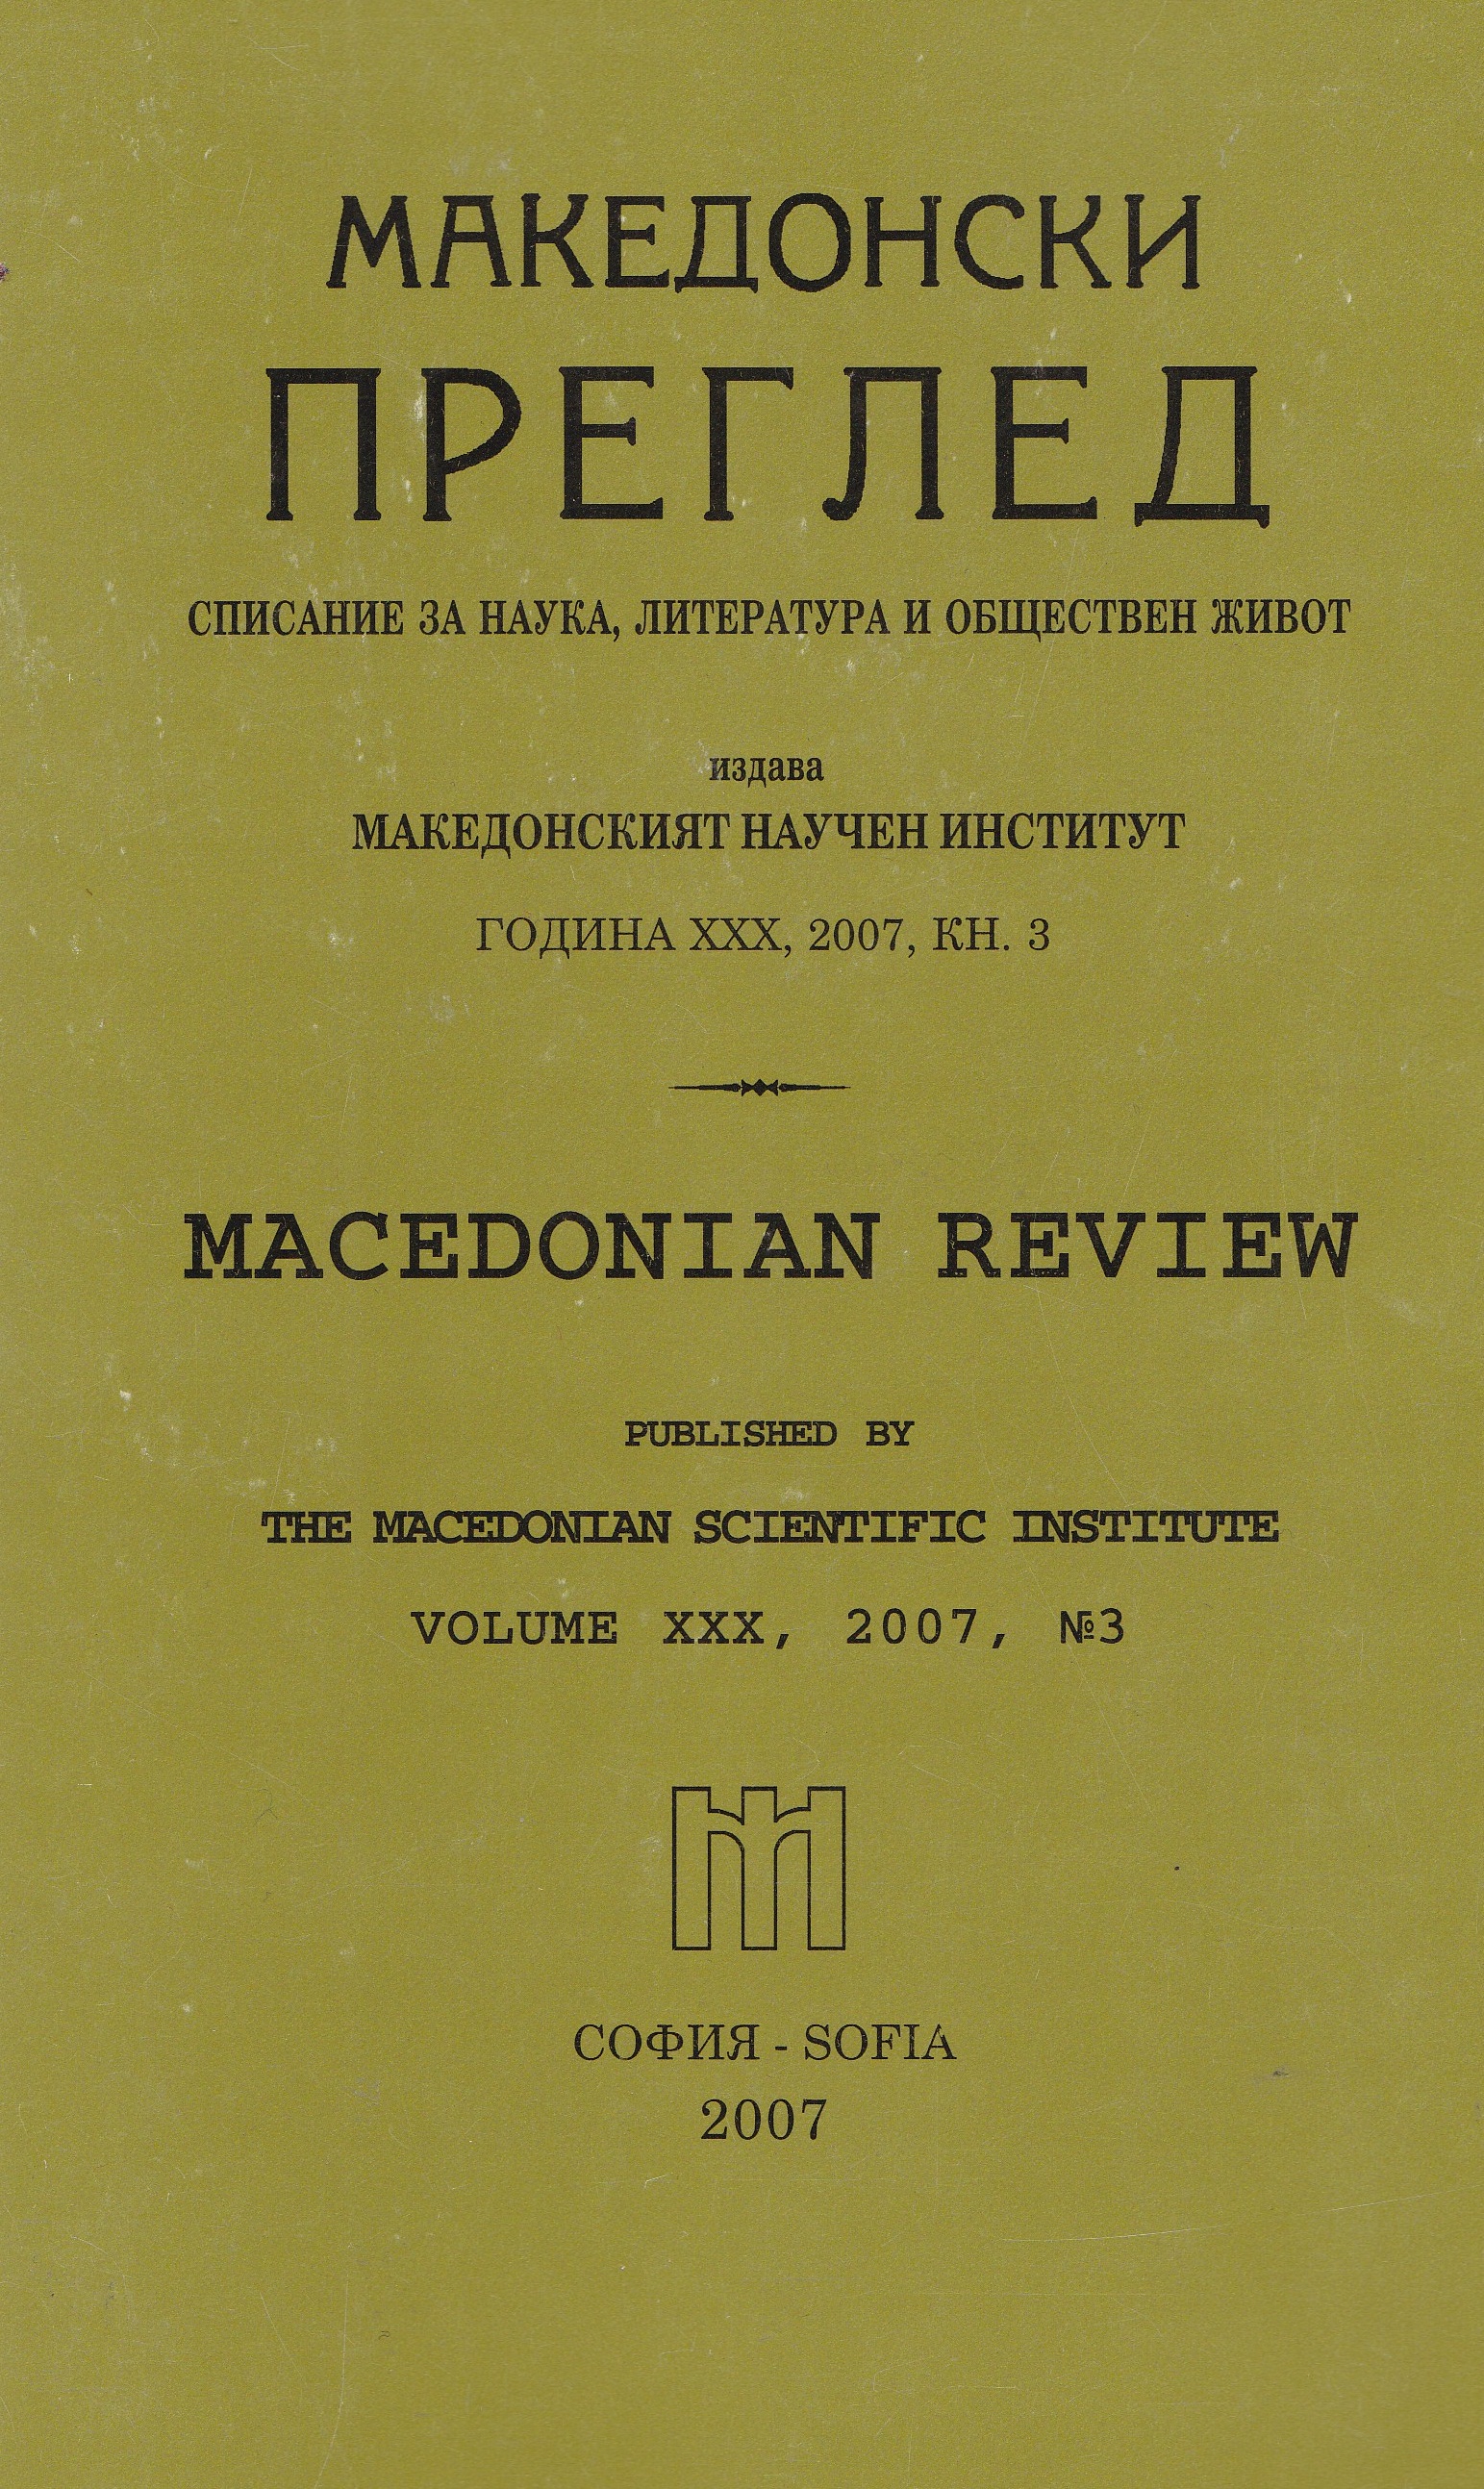 Читалищата във Вардарска Македония 1941 - 1944 г